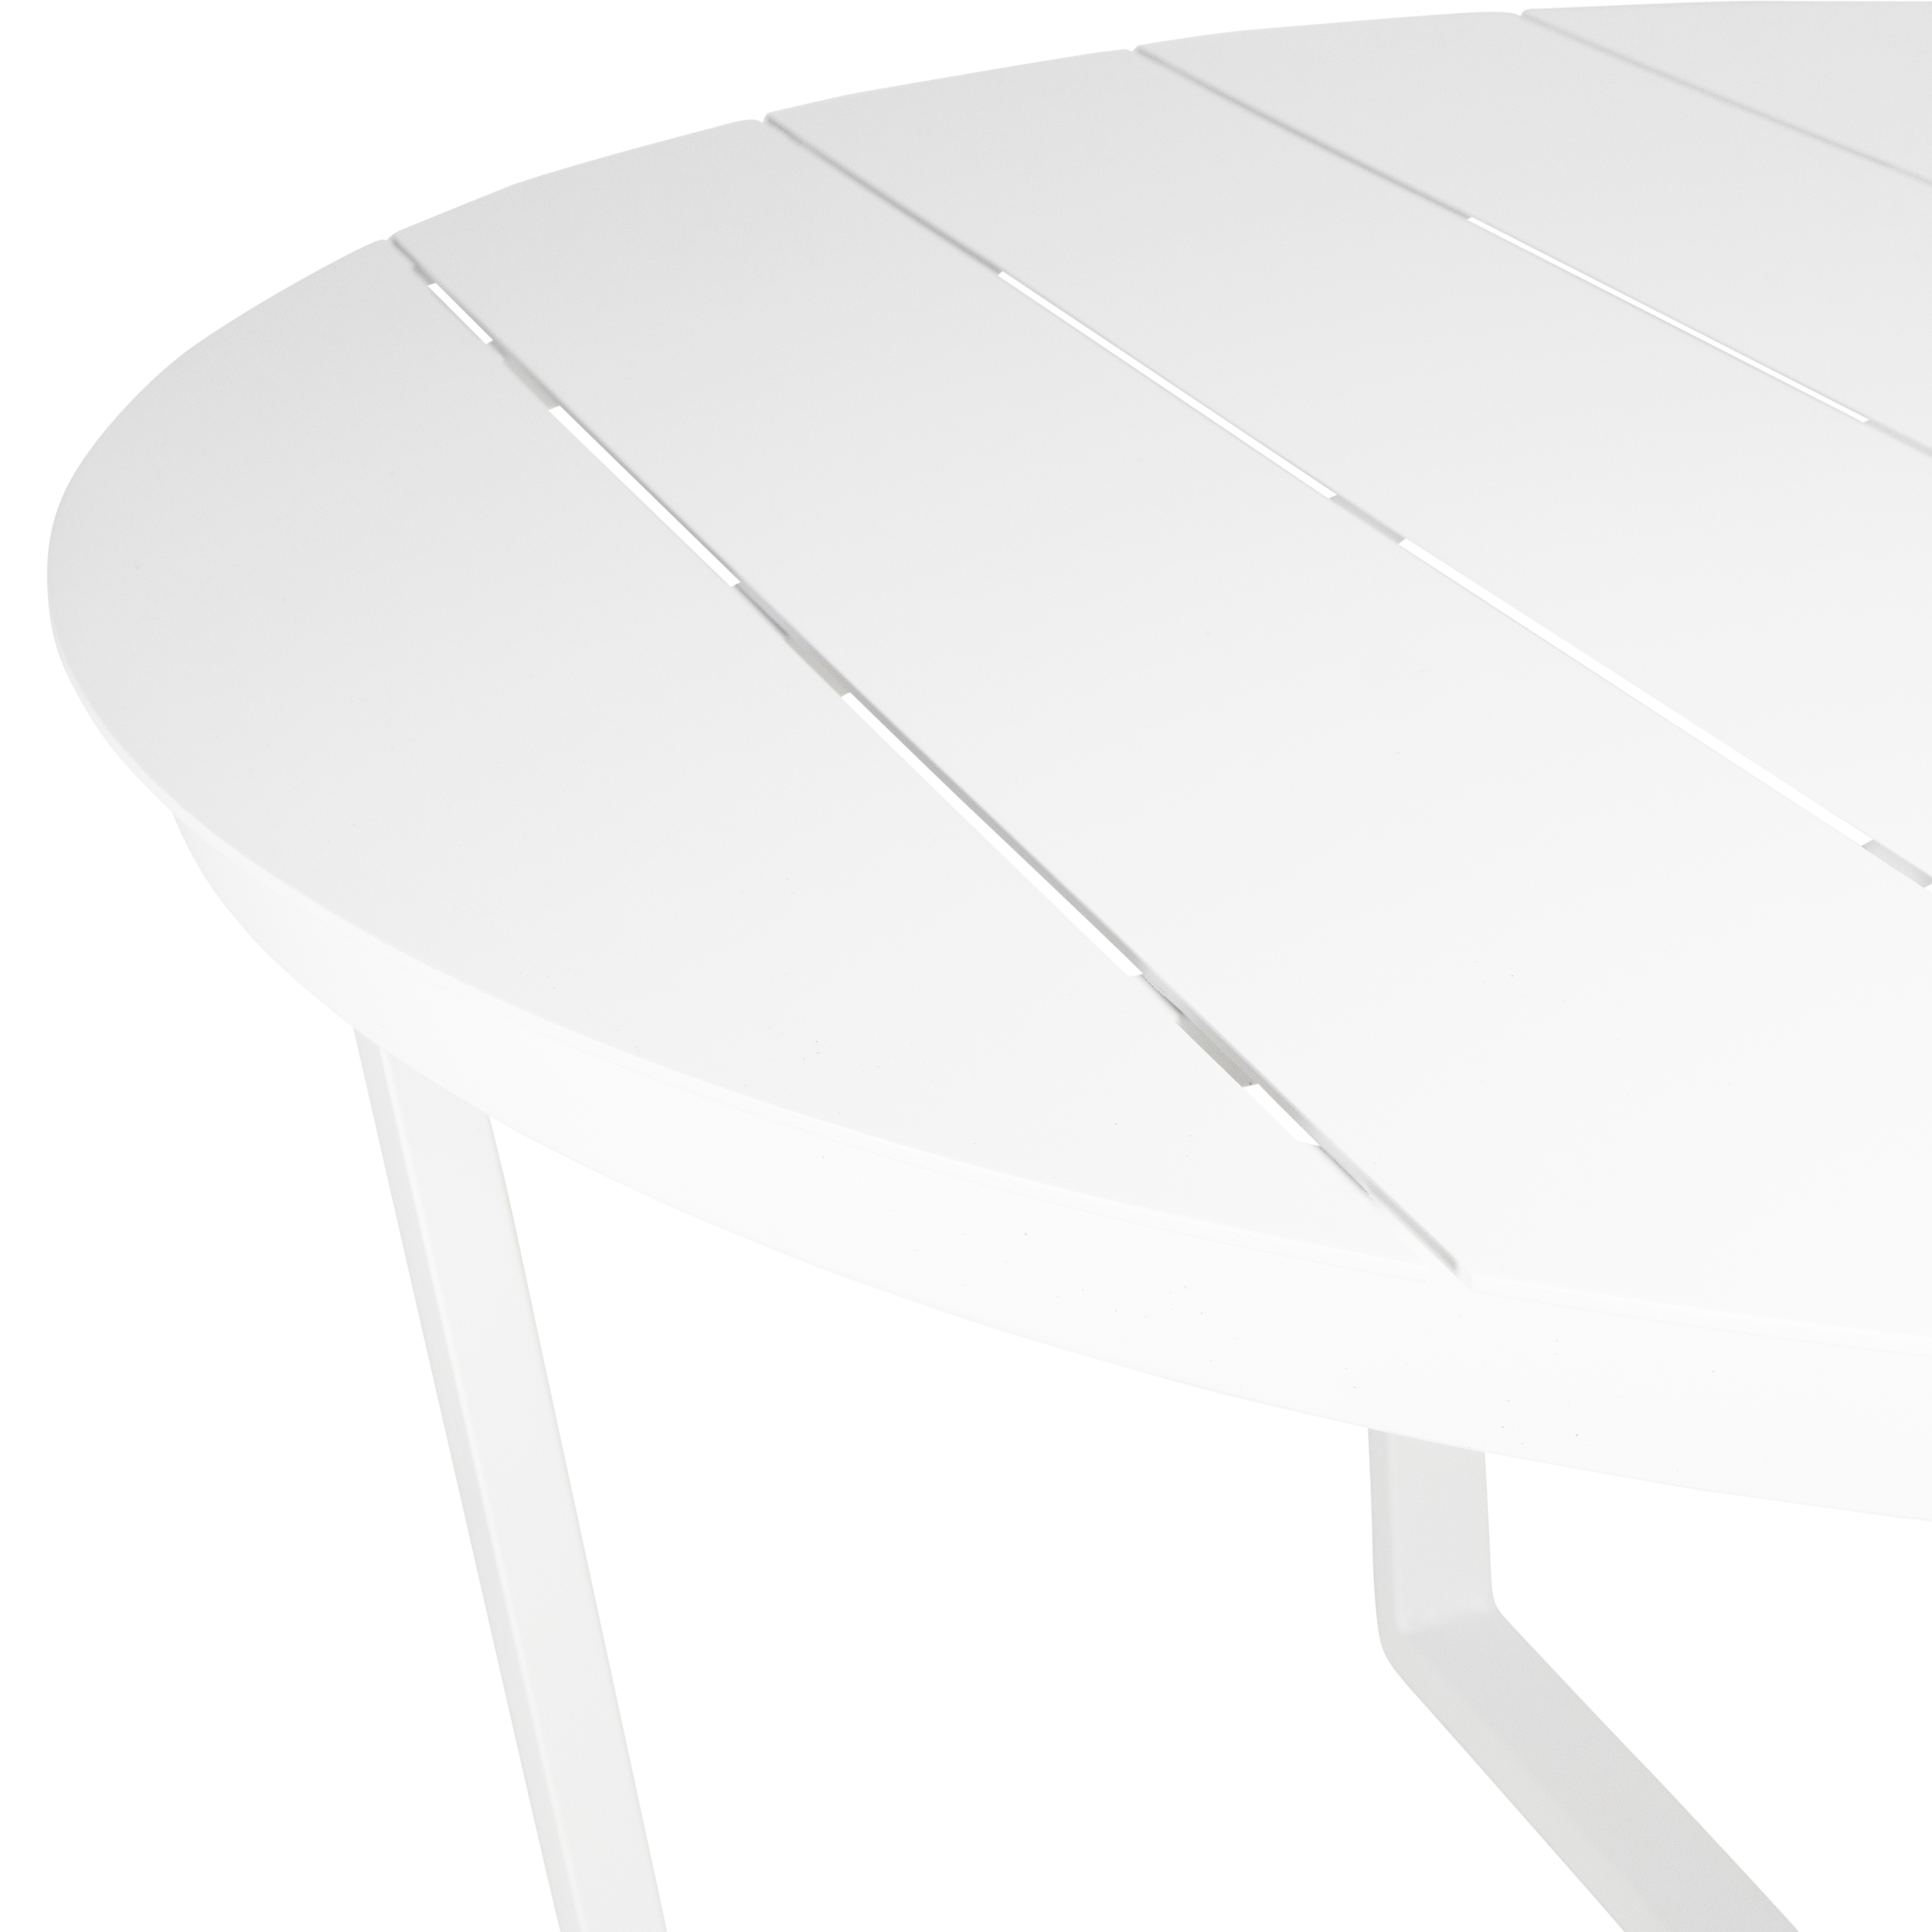 Round Outdoor Dining Table - Amalfi in Arctic White Aluminium